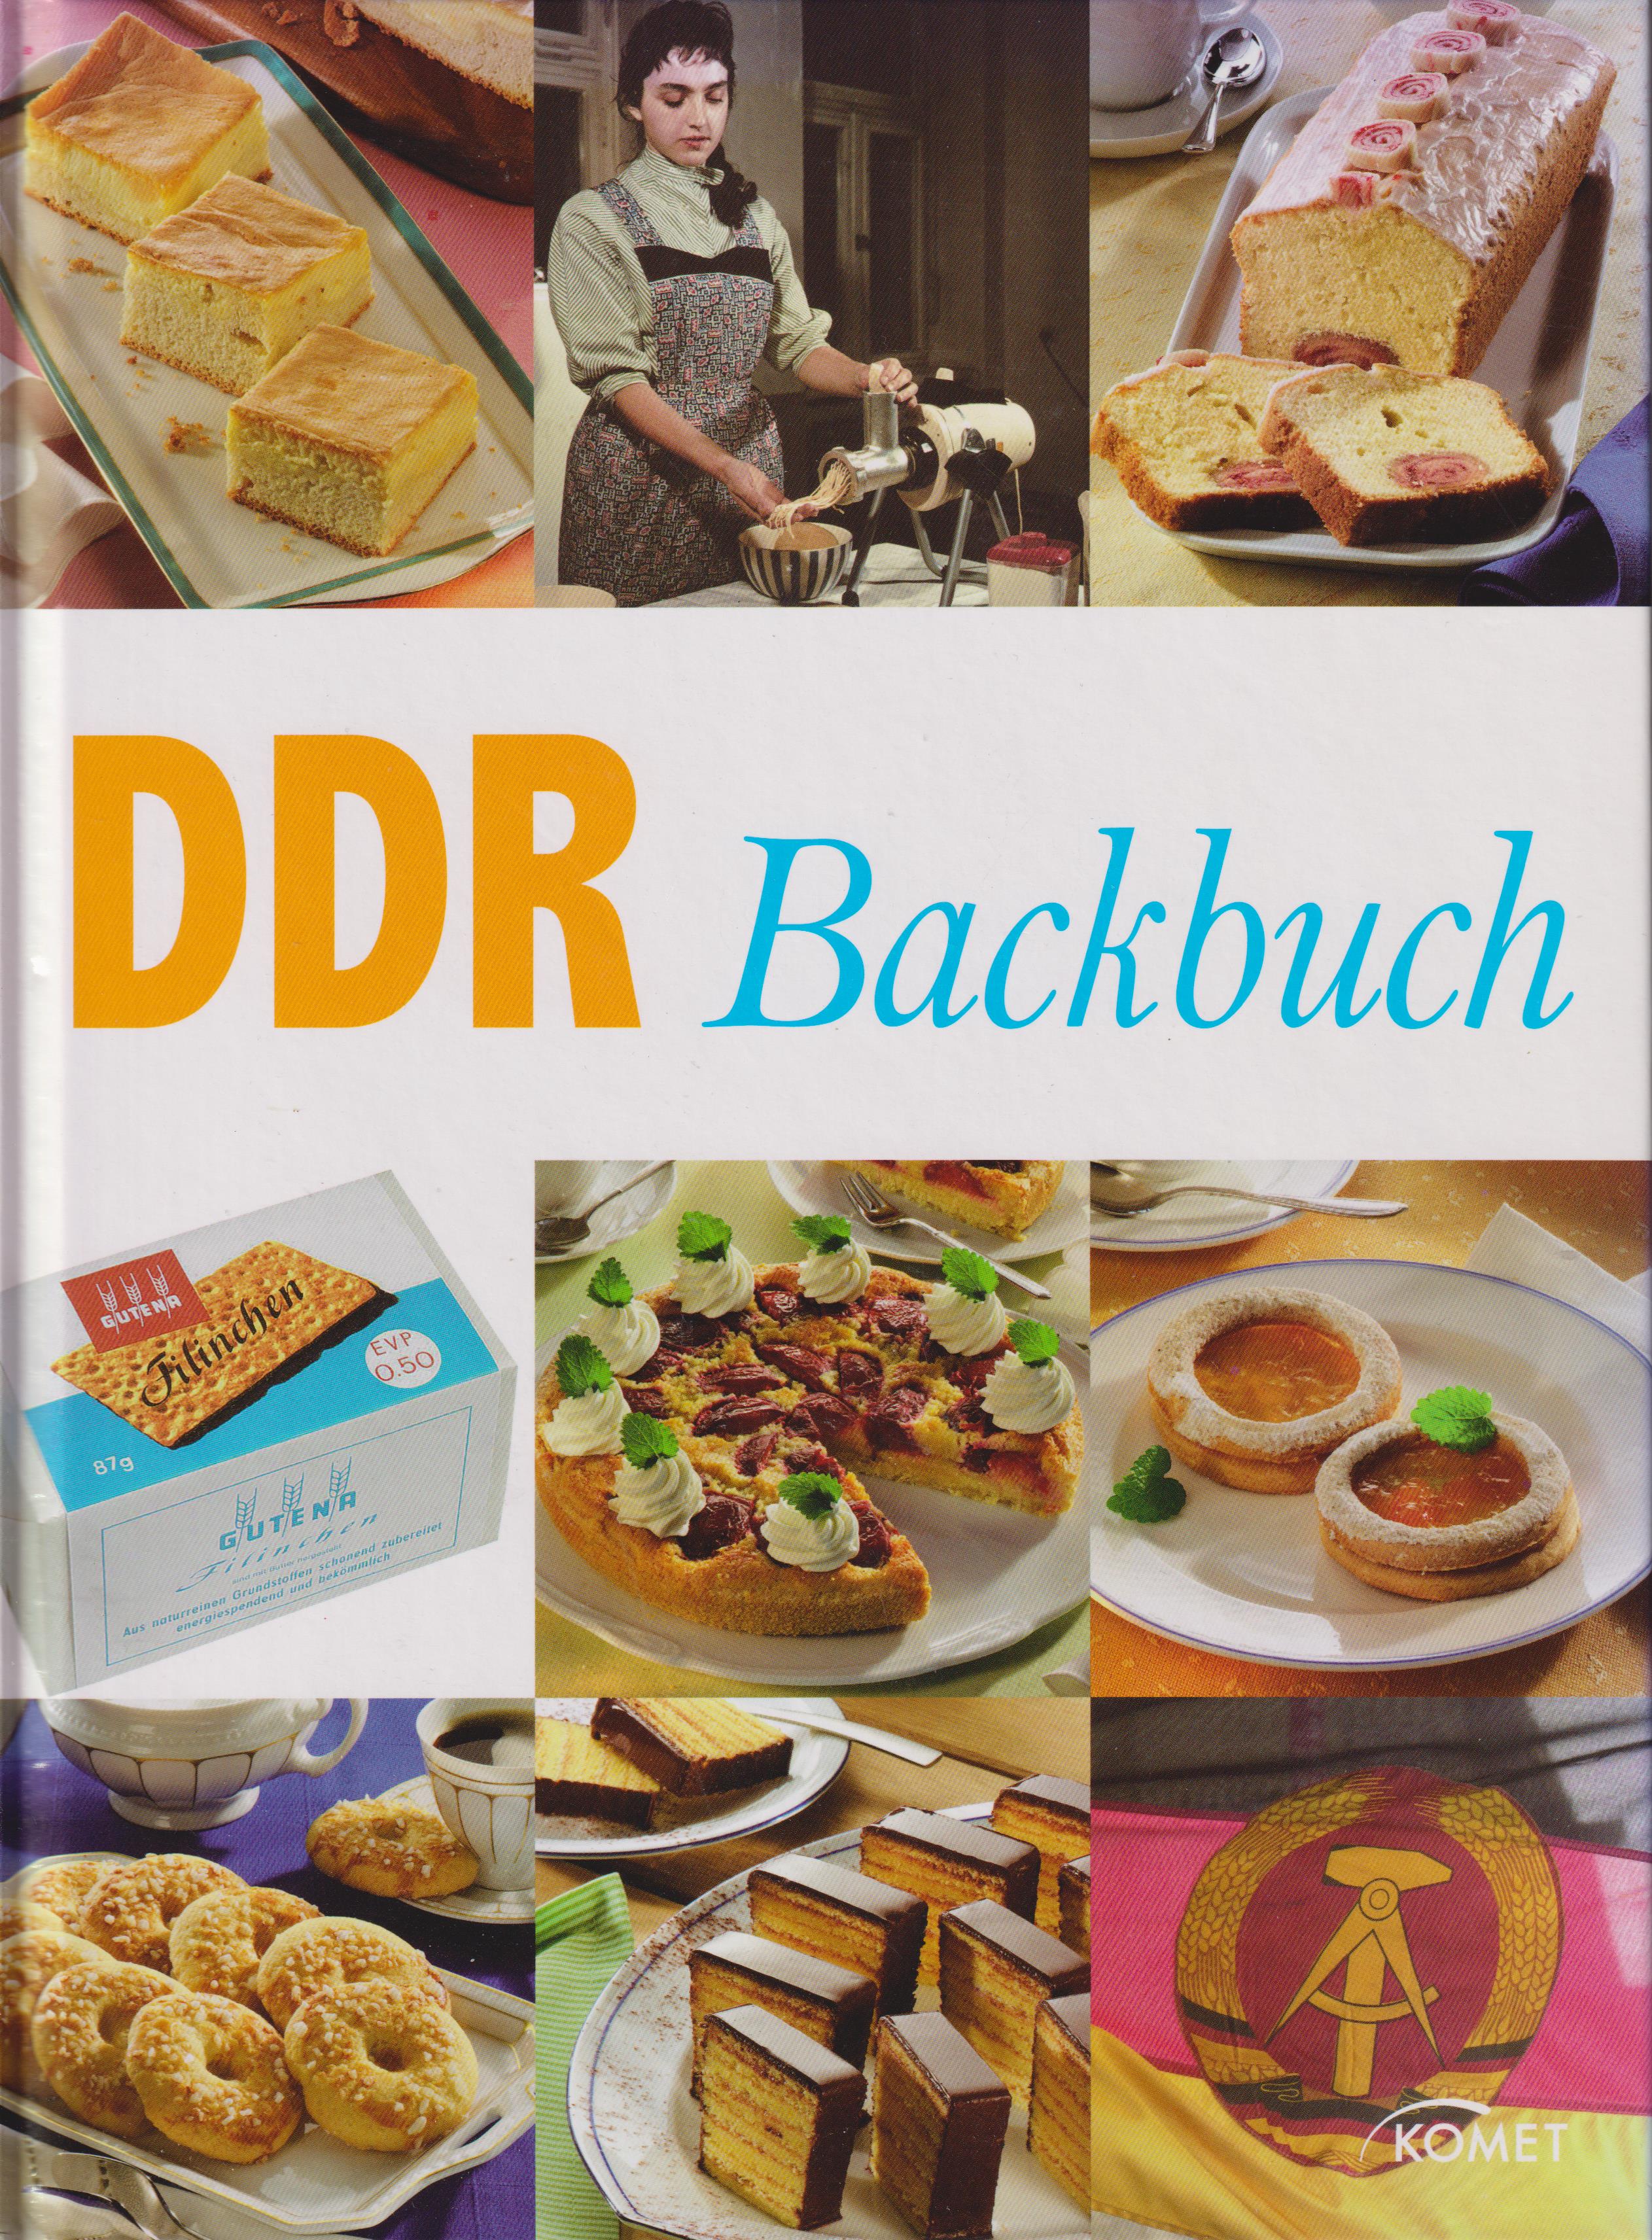 DDR Backbuch - Otzen, Barbara und Hans